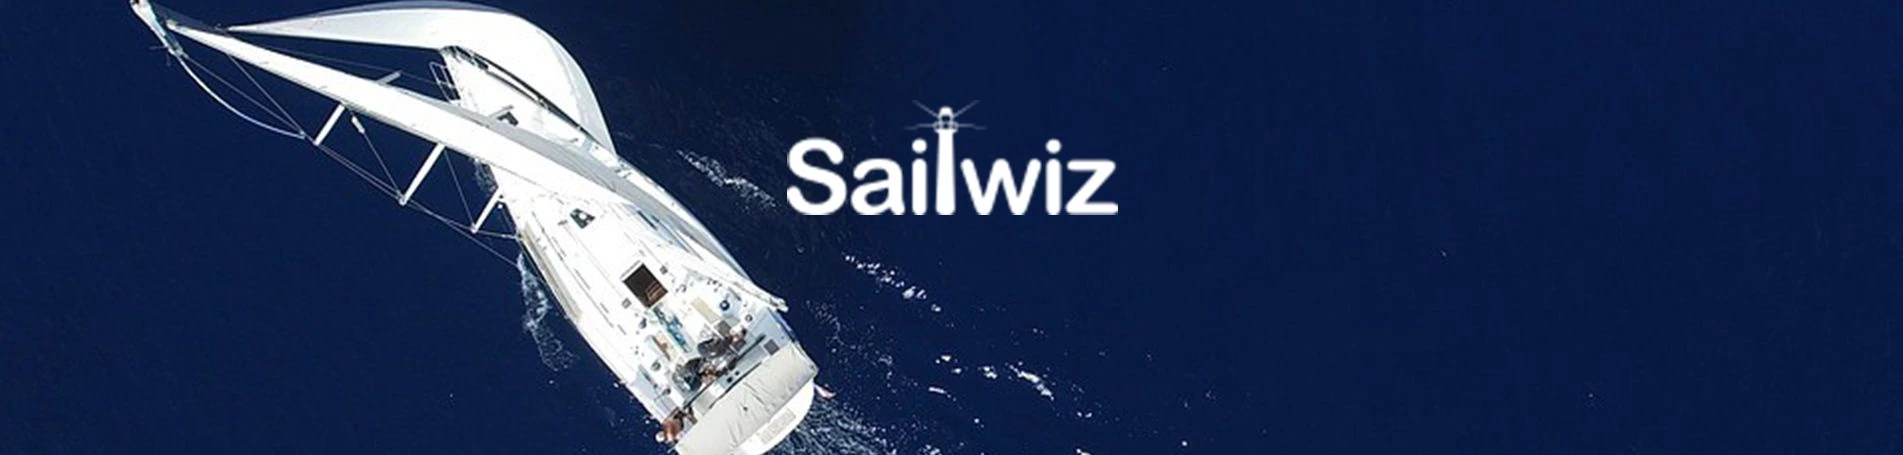 Sailwiz, nueva plataforma web desarrollada por Lifting Group